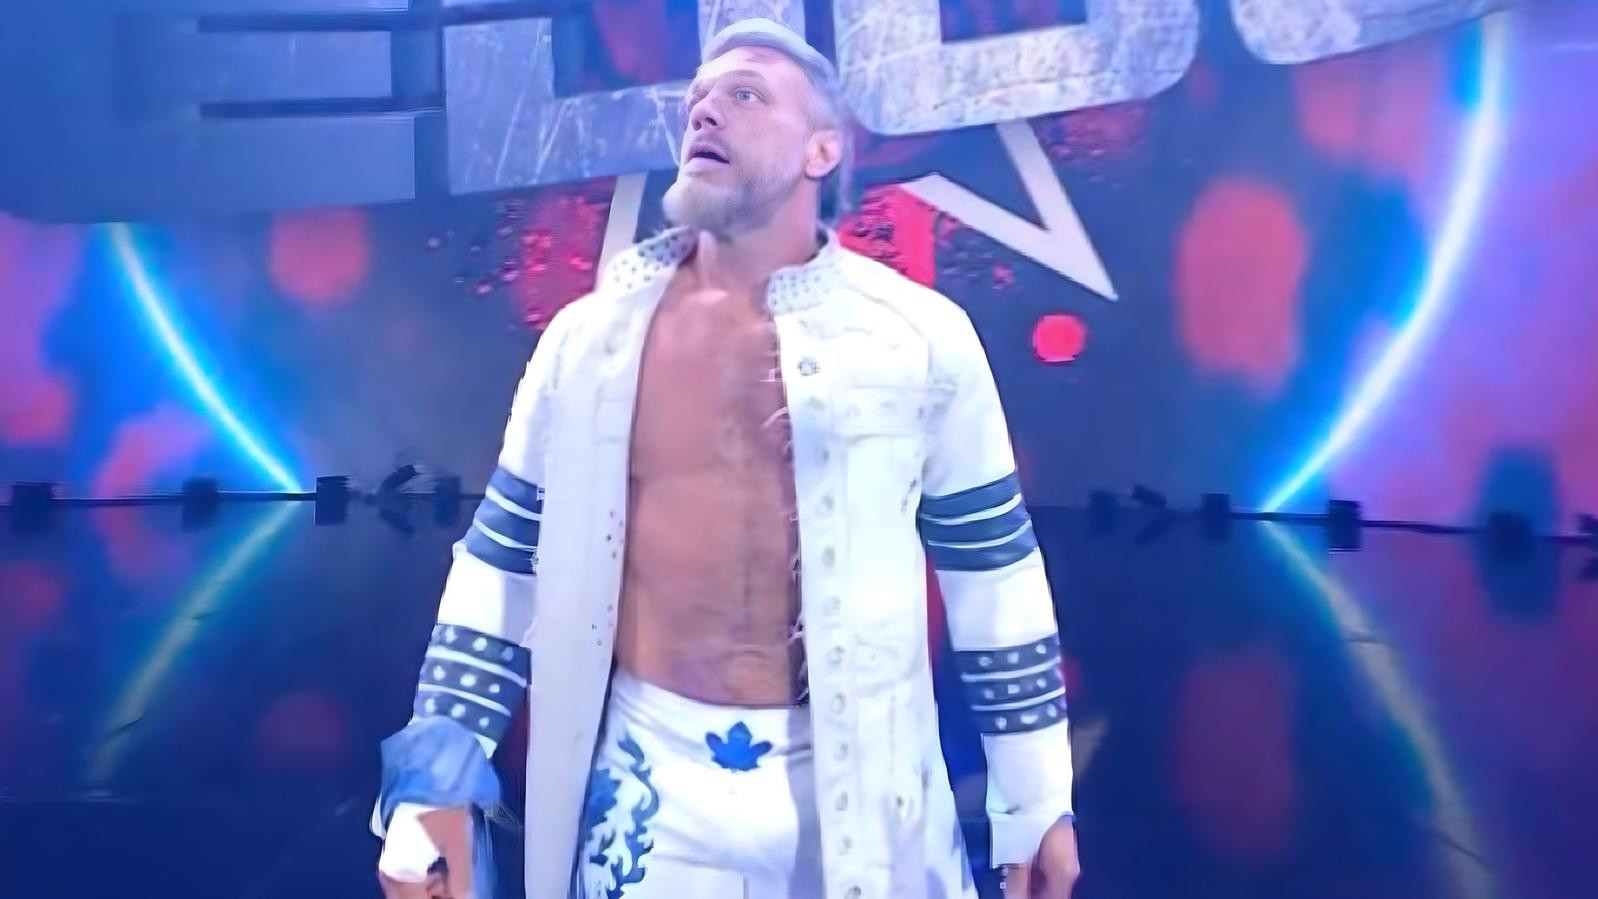 WWE Superstar Edge Wears Maple Leafs-Themed Gear For Final Match